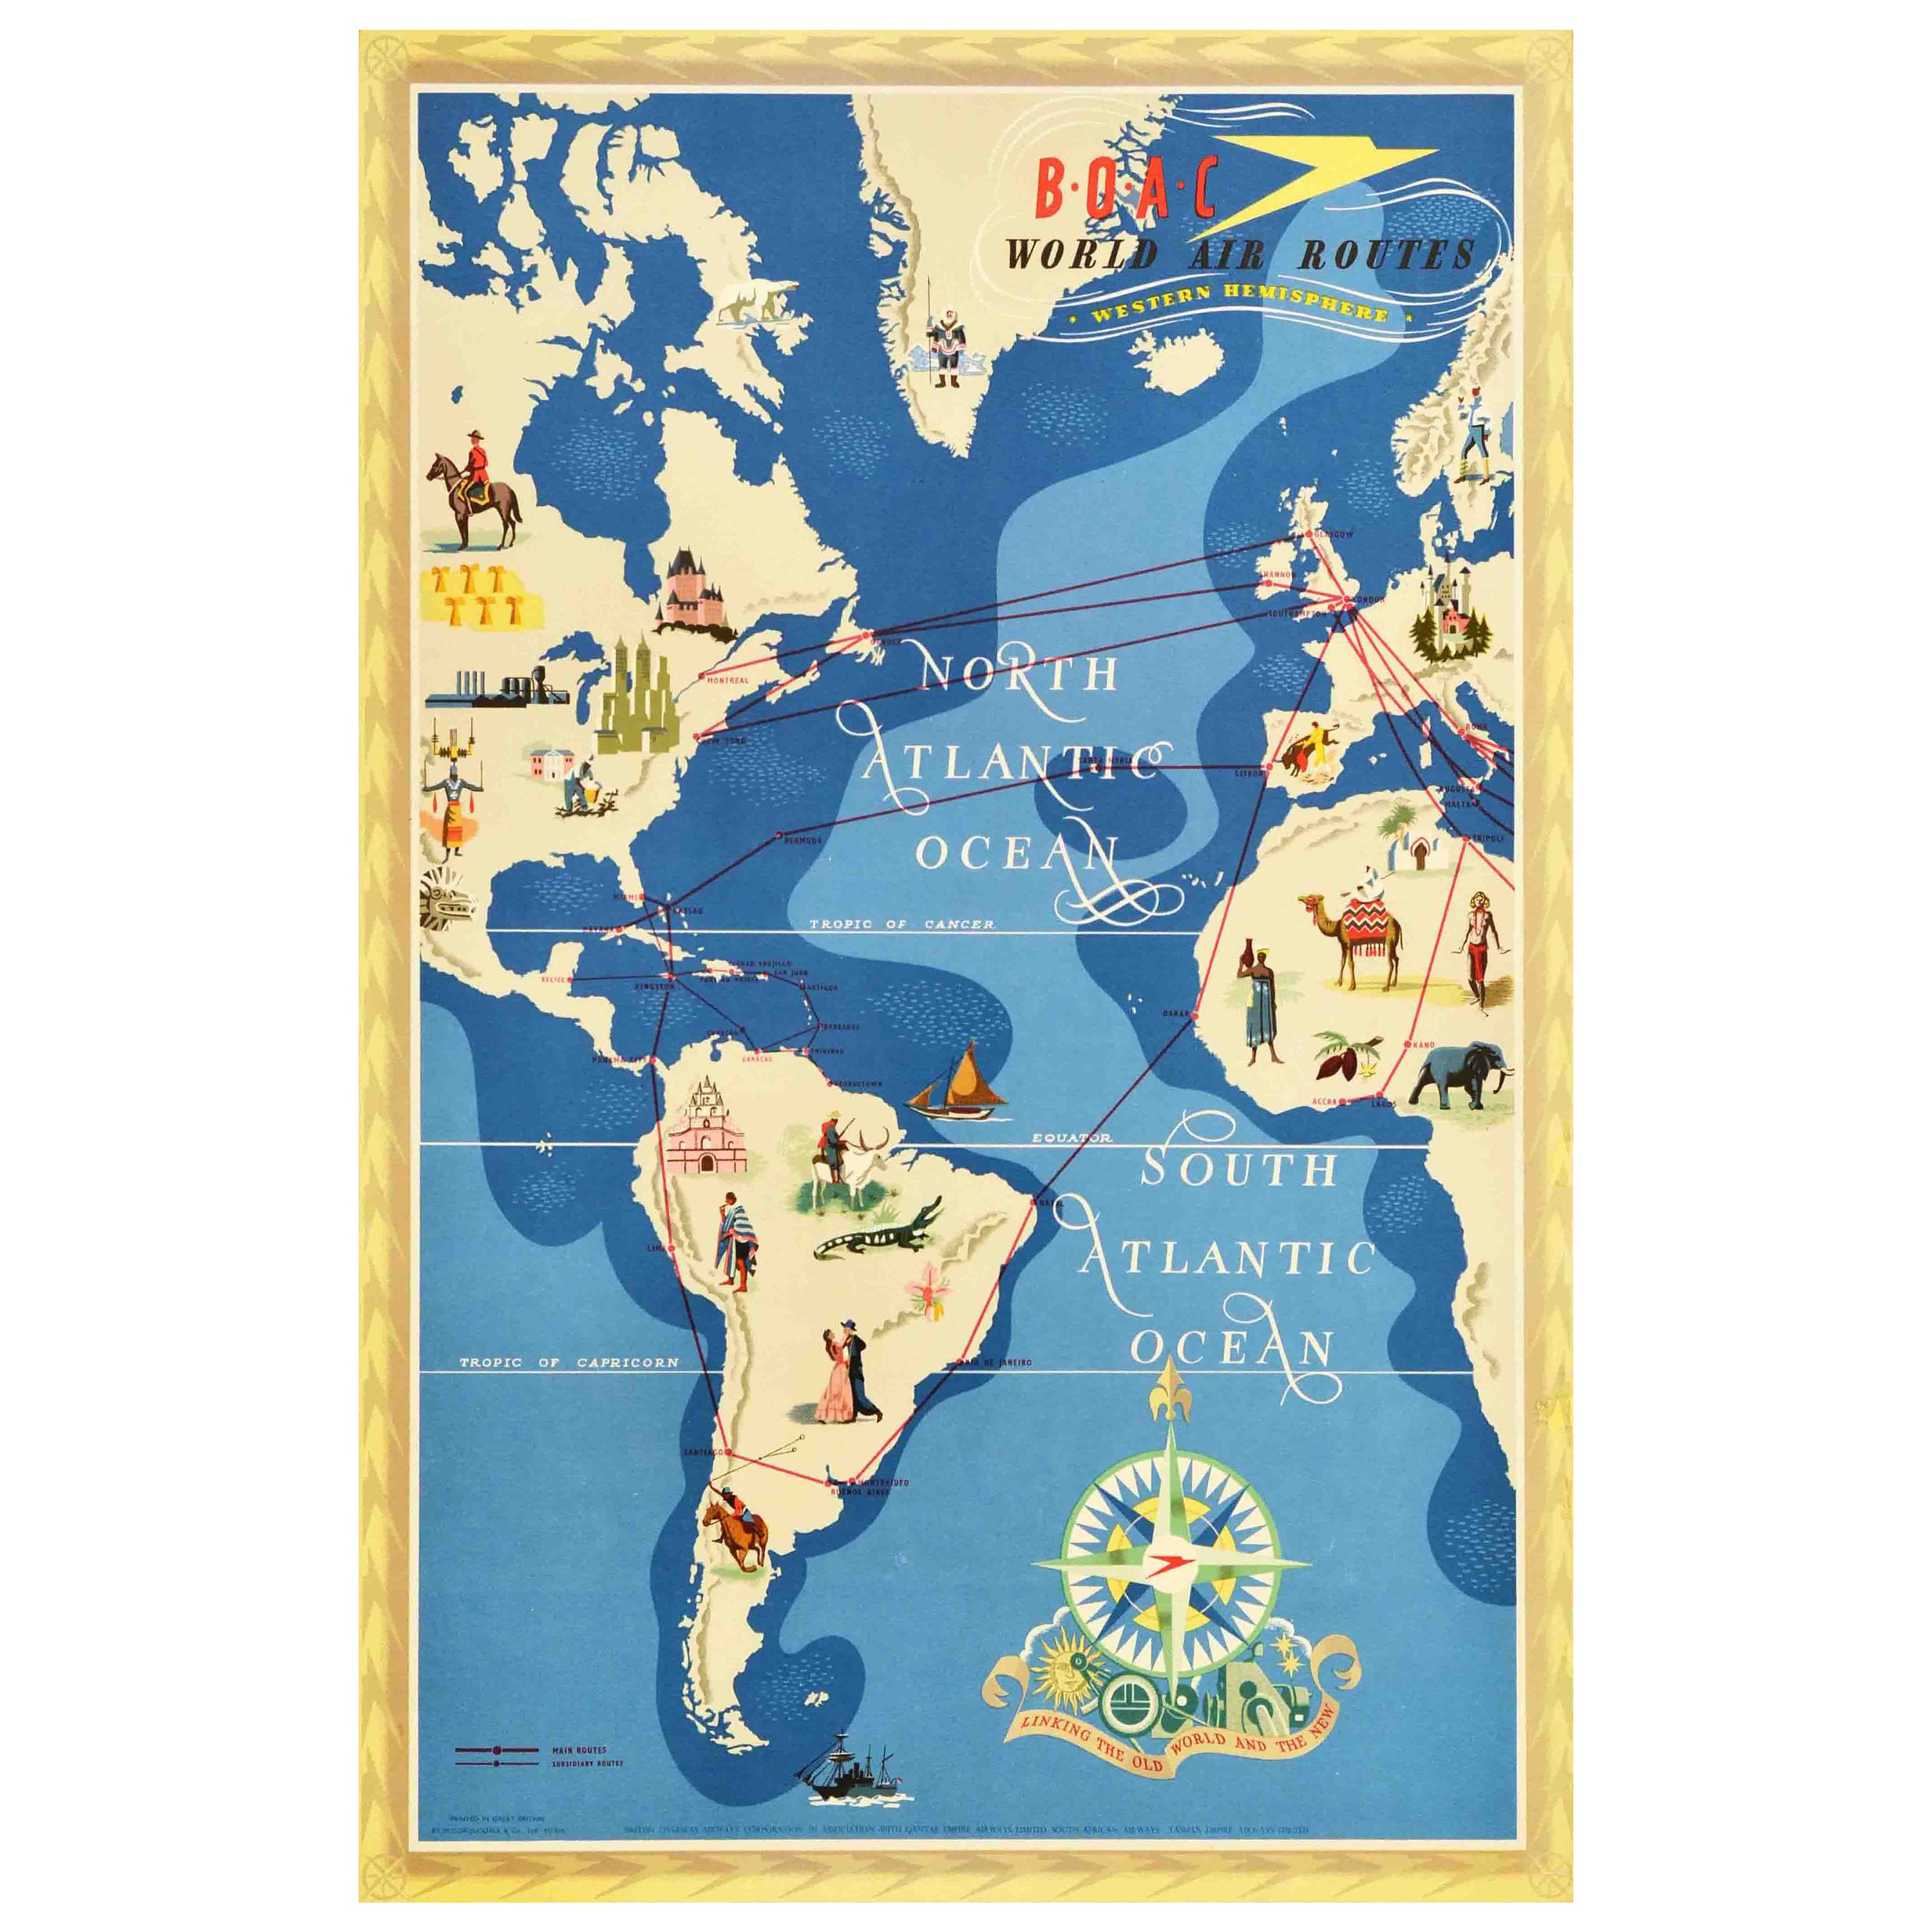 Affiche rétro originale de voyage BOAC World Air Routes, Dessin de l'hémisphère occidentale